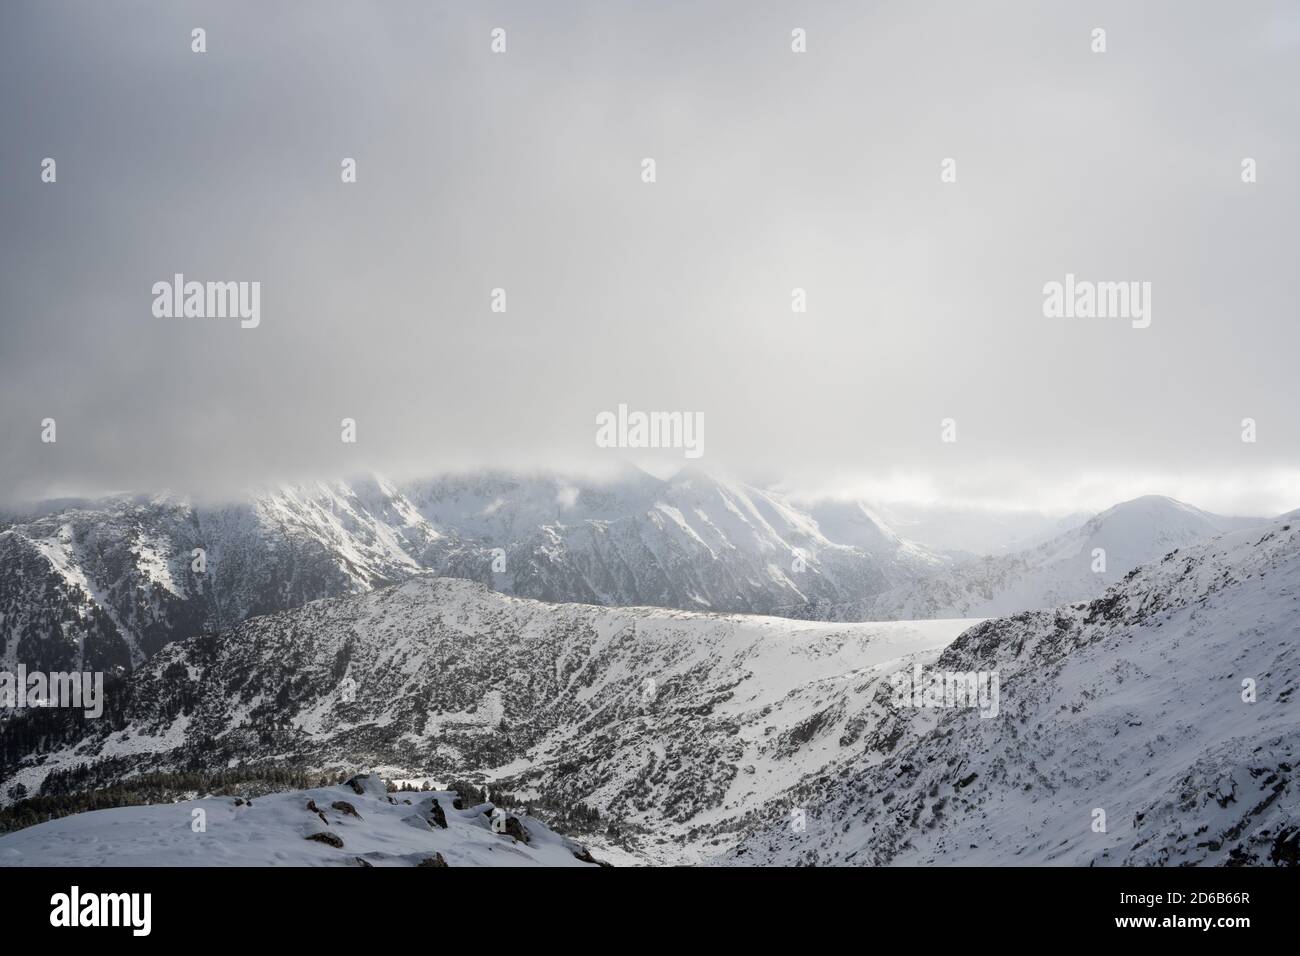 Bansko skiing resort Stock Photo